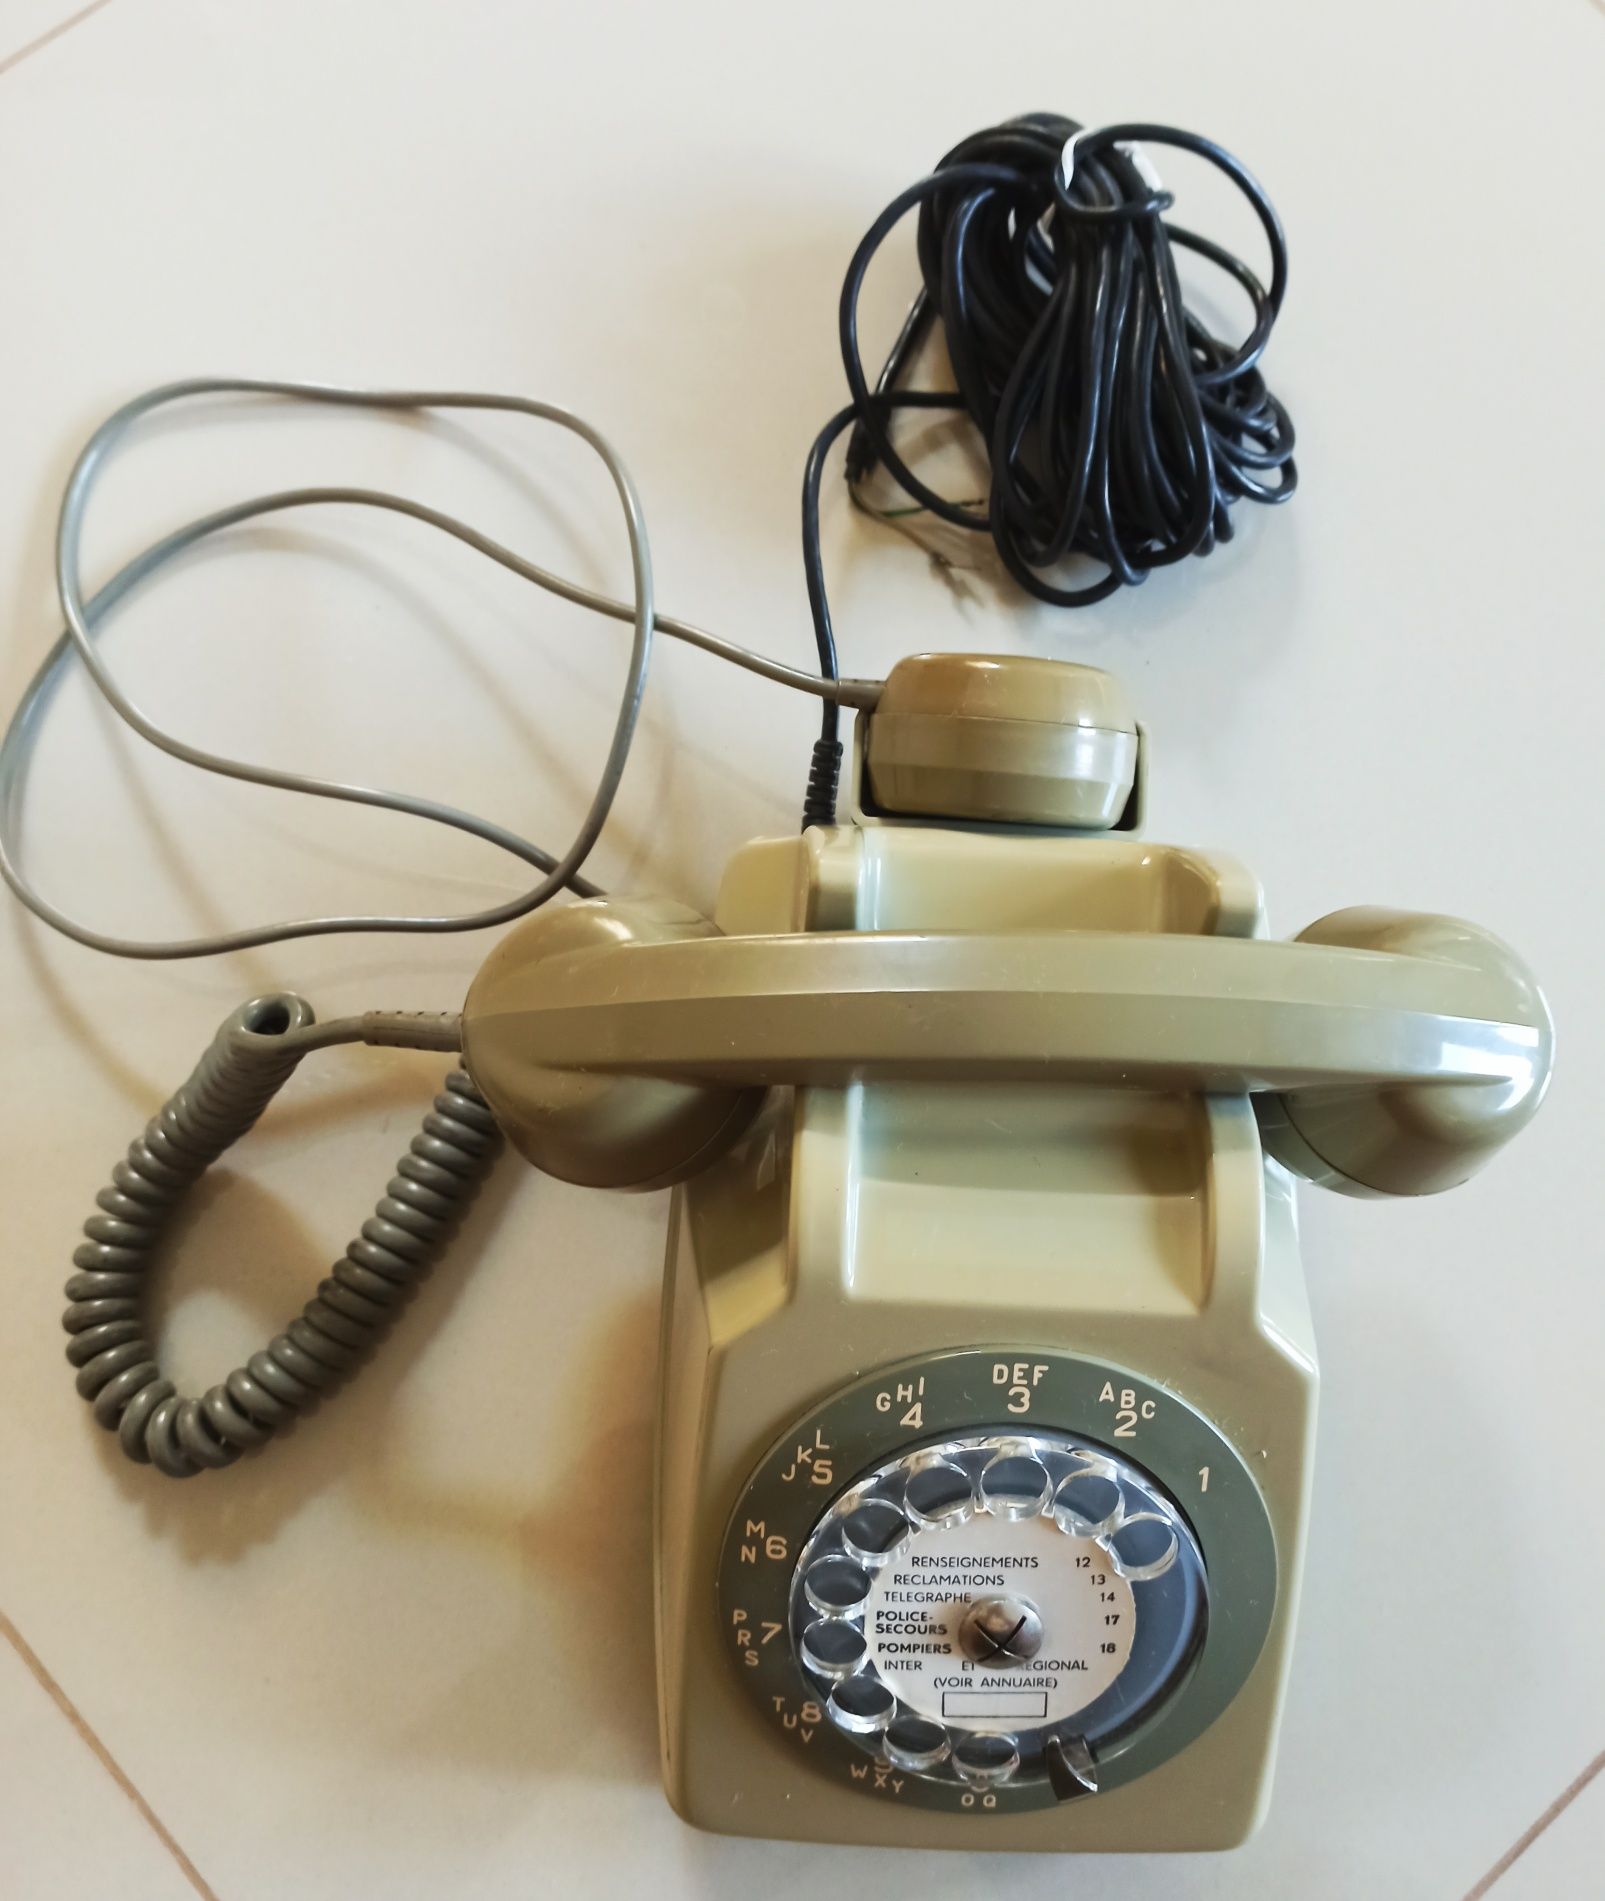 Telefon de colectie folosit de Politia Nationala din Franța